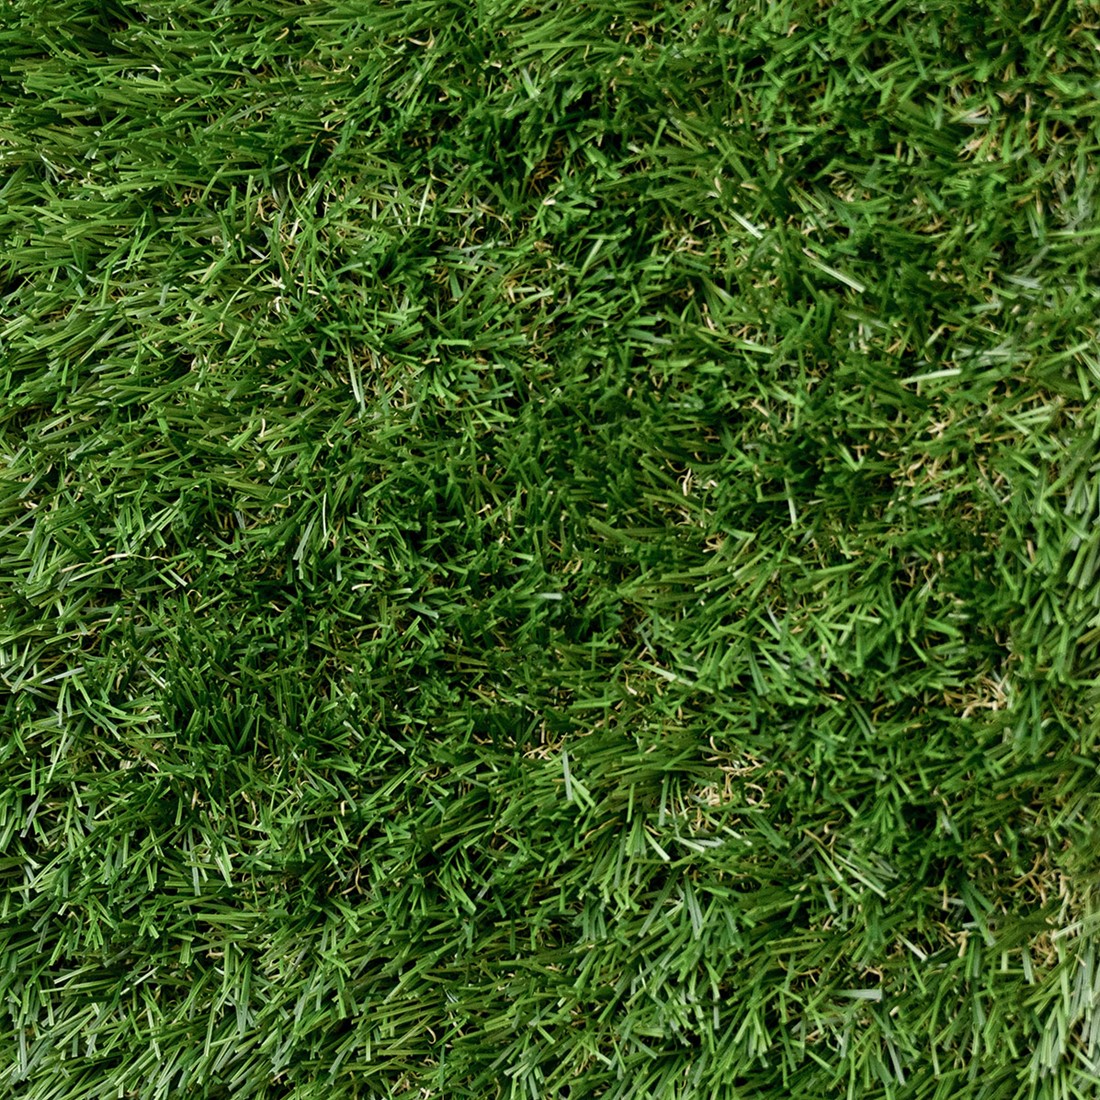 Of Vorm van het schip Natuur Kunstgras Grass Art Greenyard 4mtr. breed poolhoogte 40mm Steenplaza Lexmond